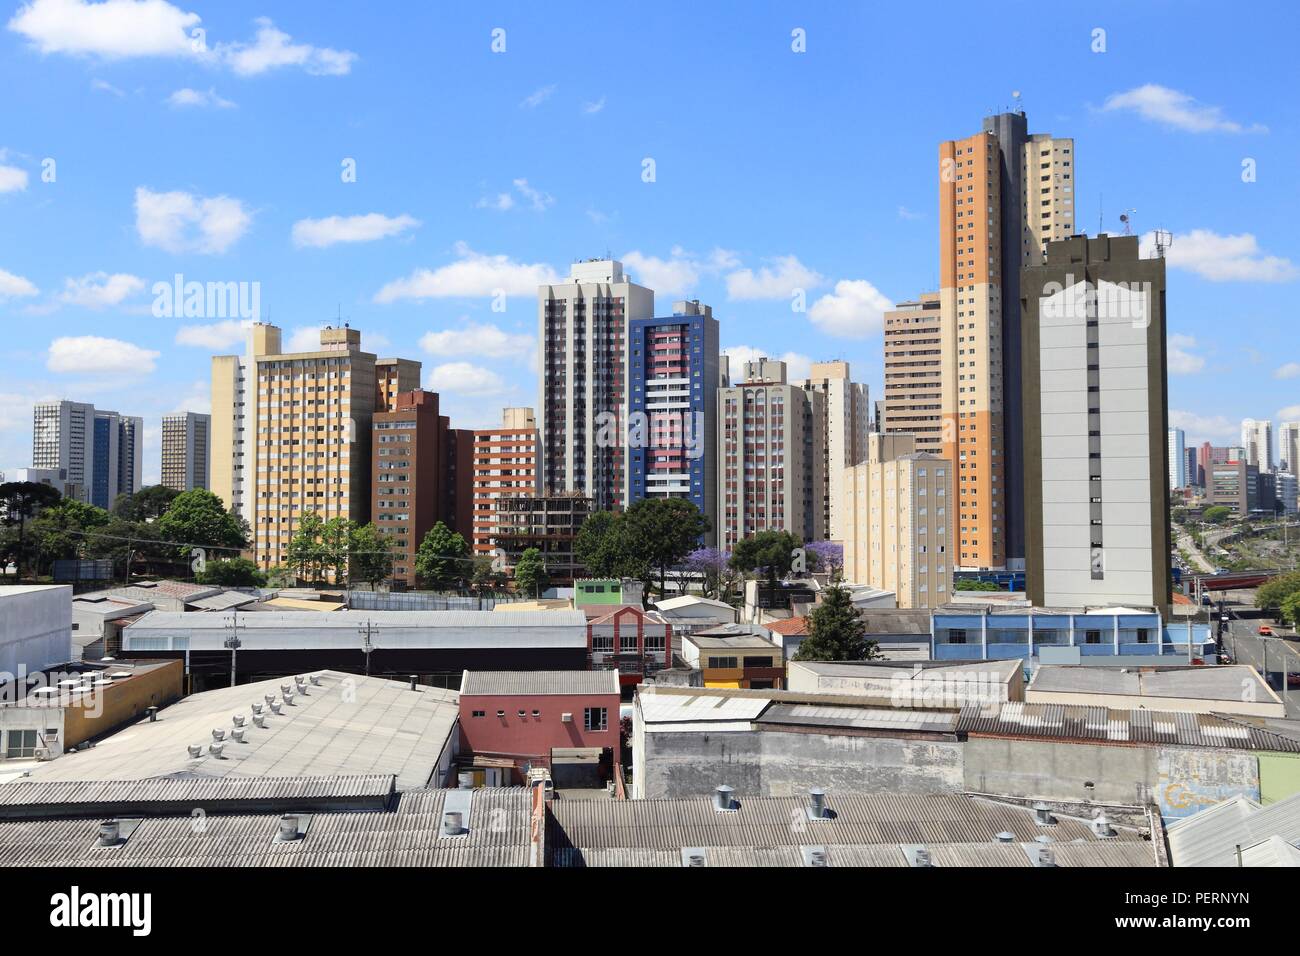 Curitiba, Brasilien - die moderne Skyline der Stadt. Hohes Apartmentgebäude. Stockfoto